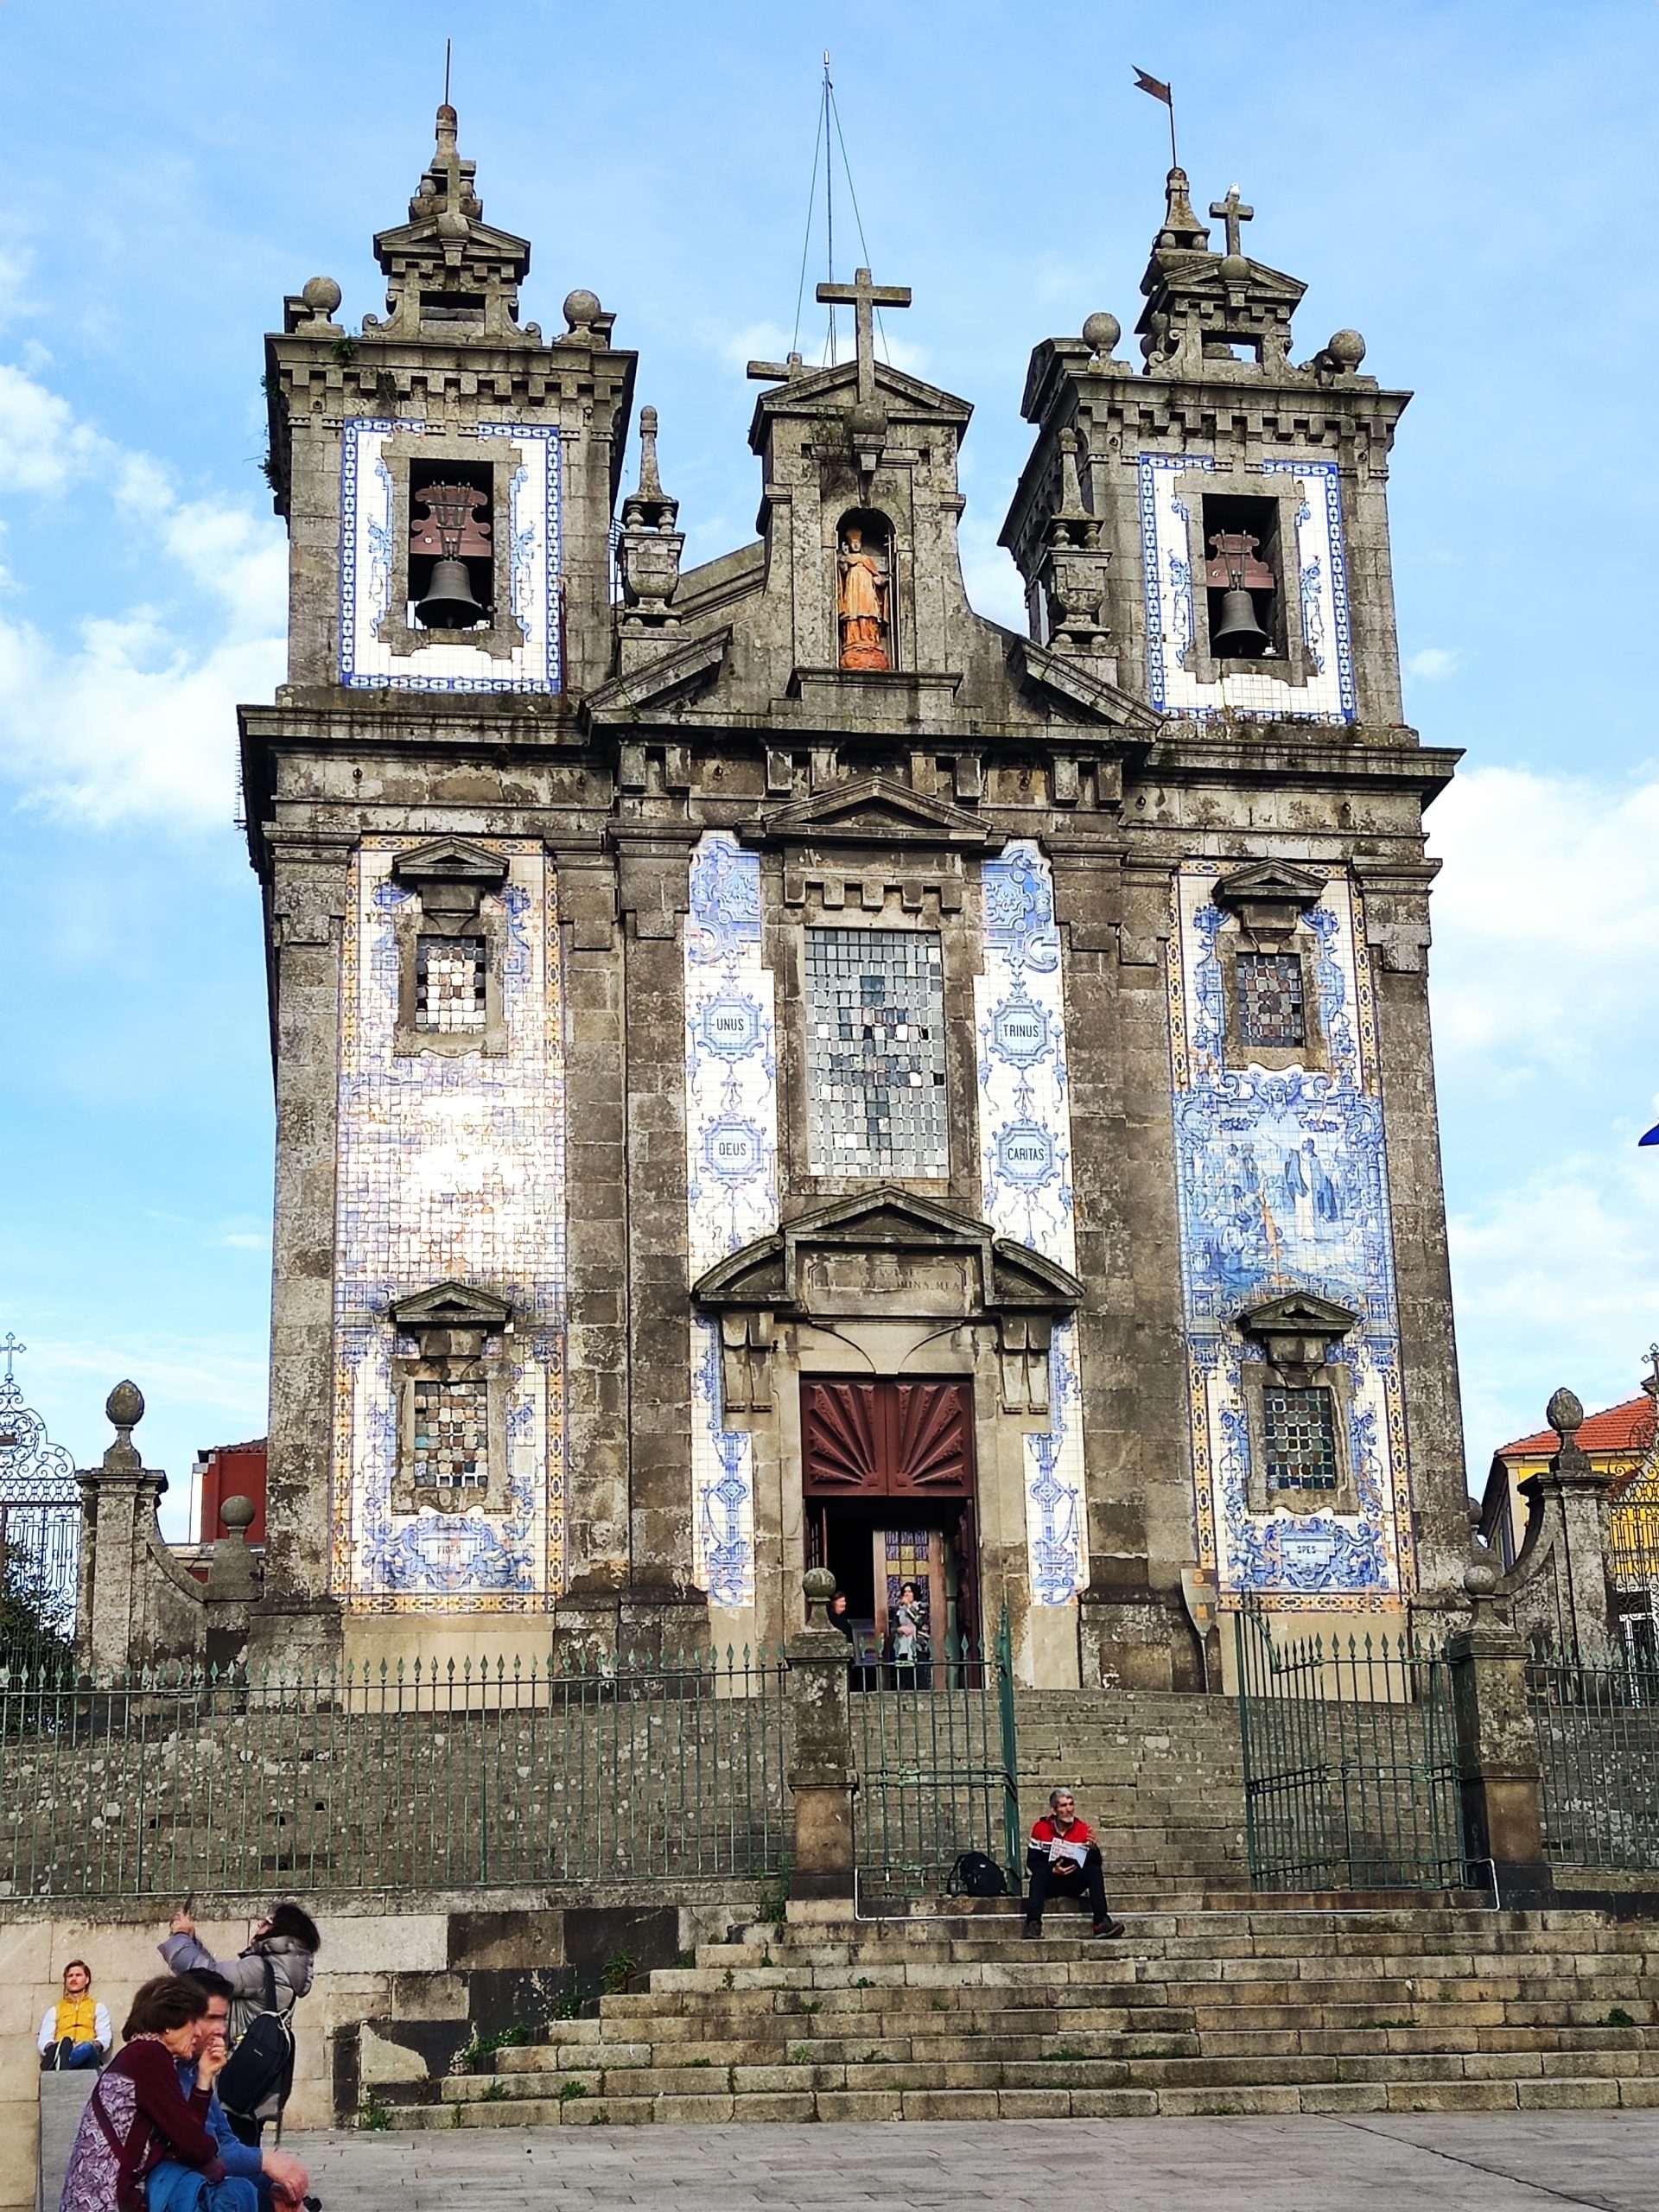 Qué ver y hacer en Oporto - Iglesia de San Ildefonso de Oporto